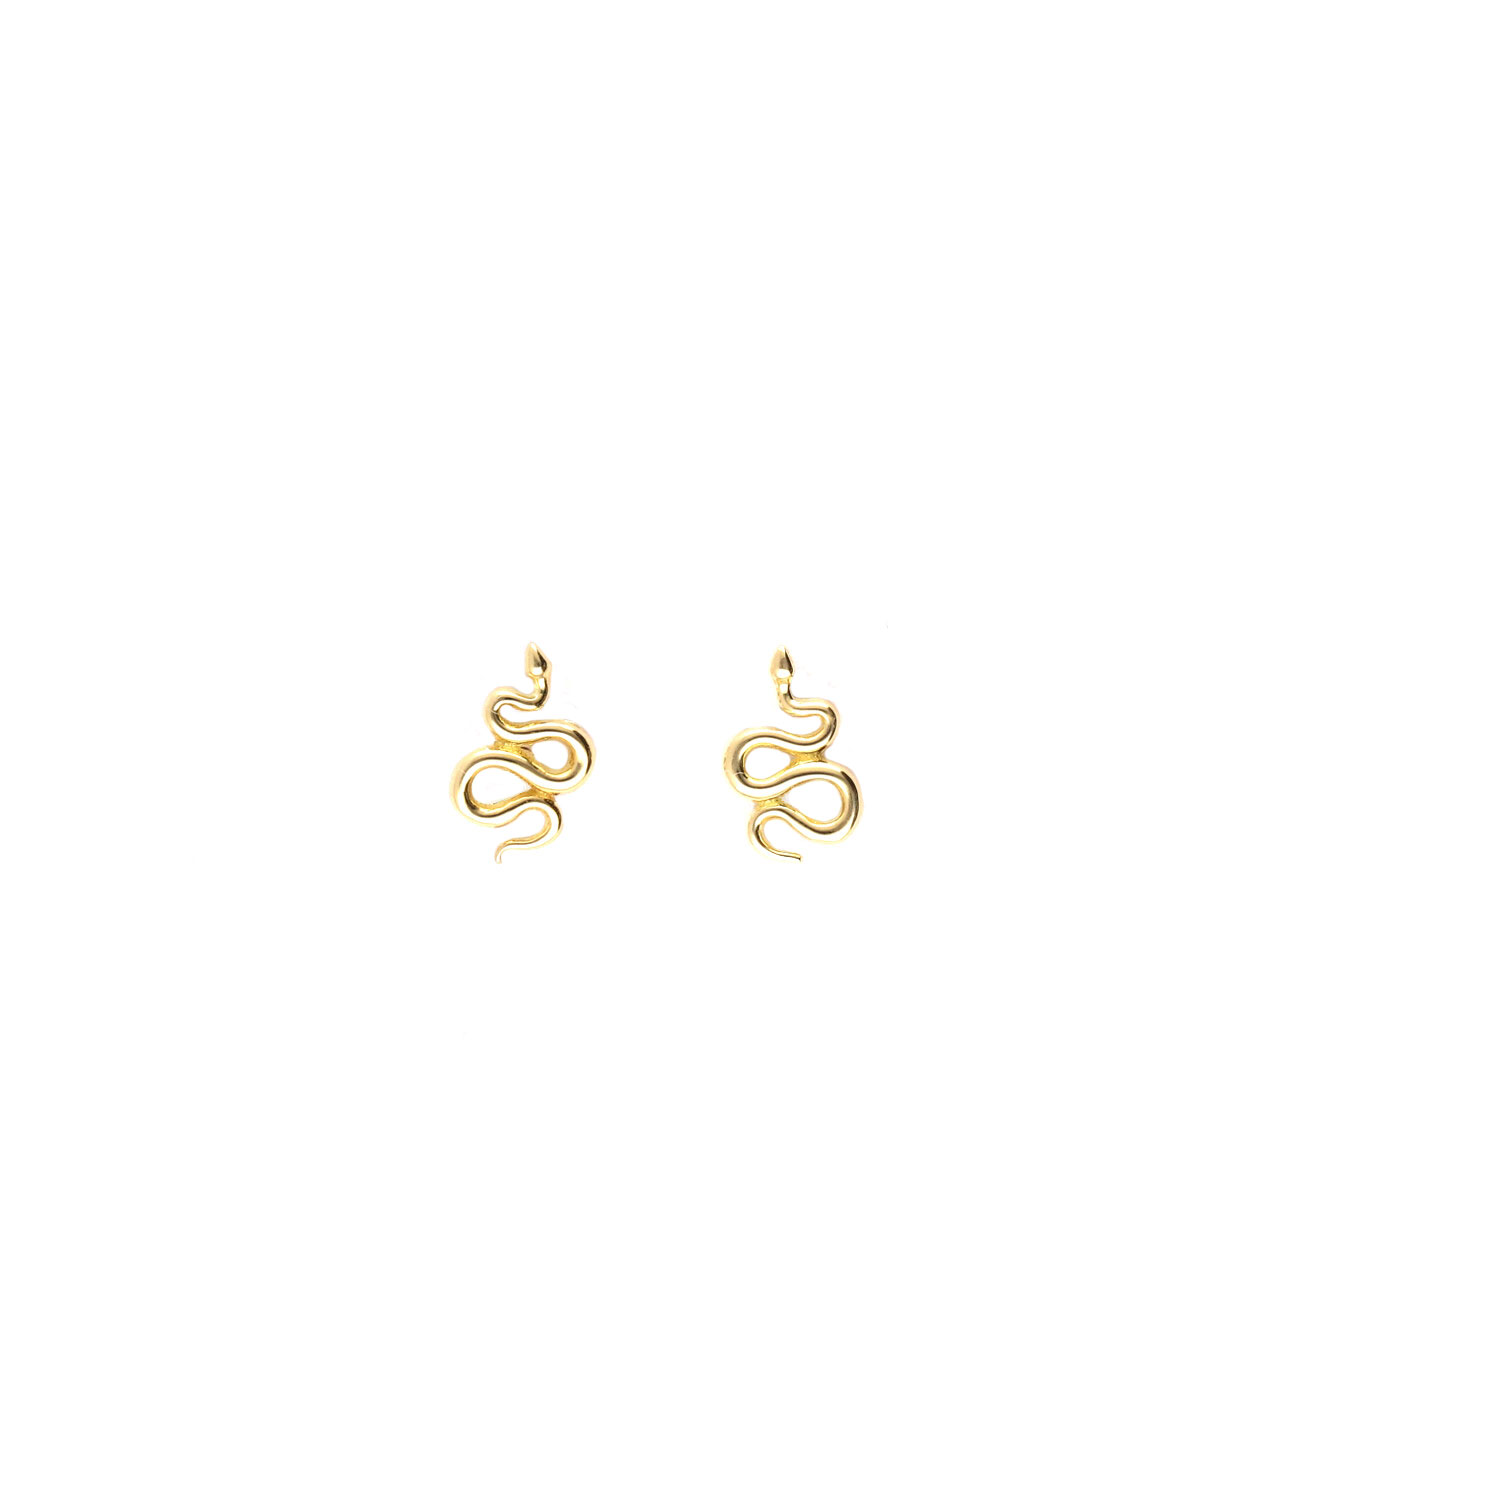 Ptes de oro Serpentine D31 Pendientes de oro elegantes y sofisticados.